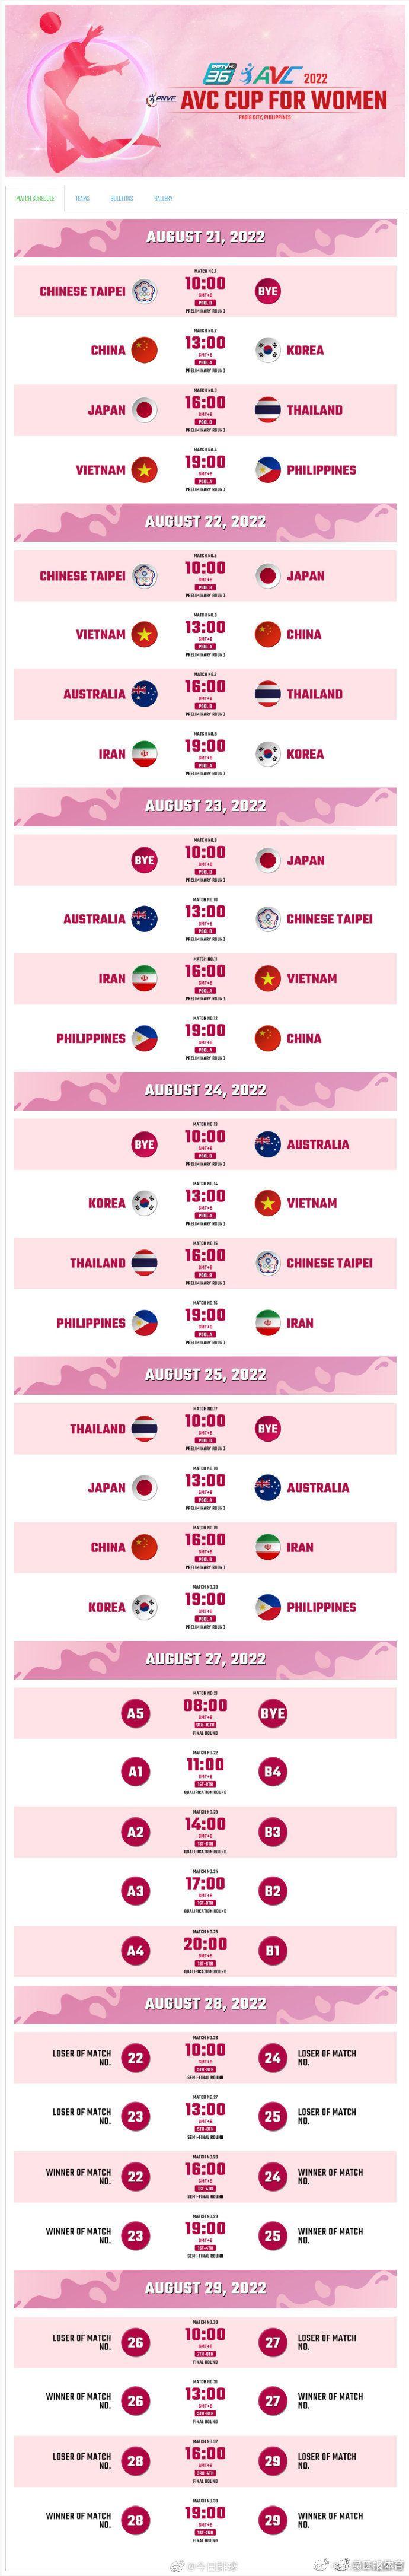 亚洲杯女排赛程2022赛程表